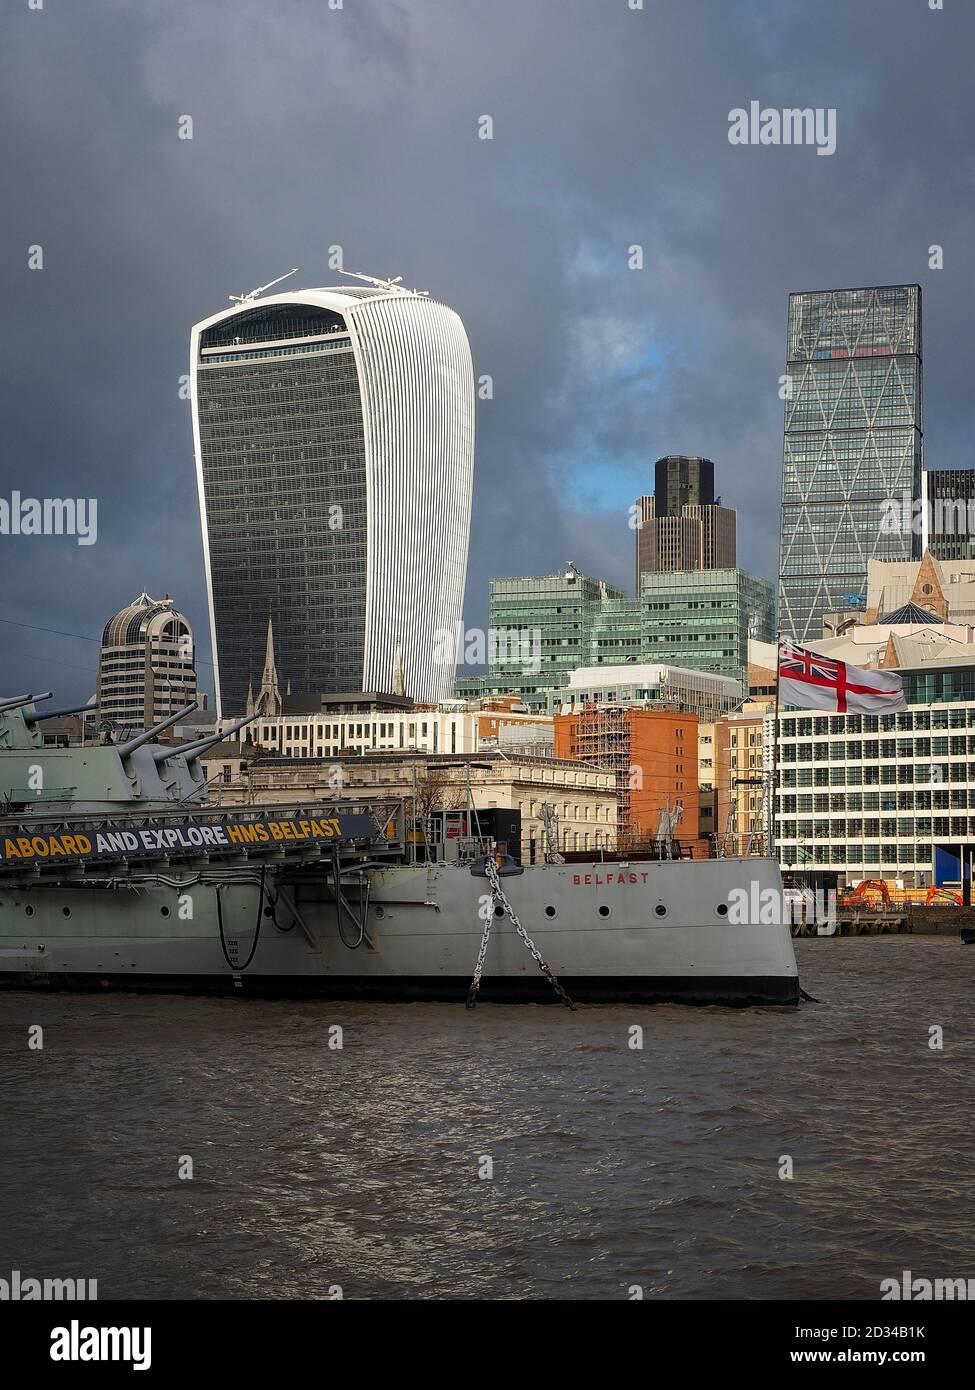 HMS Belfast et Walkie Talkie sur le remblai de la Tamise Londres Banque D'Images